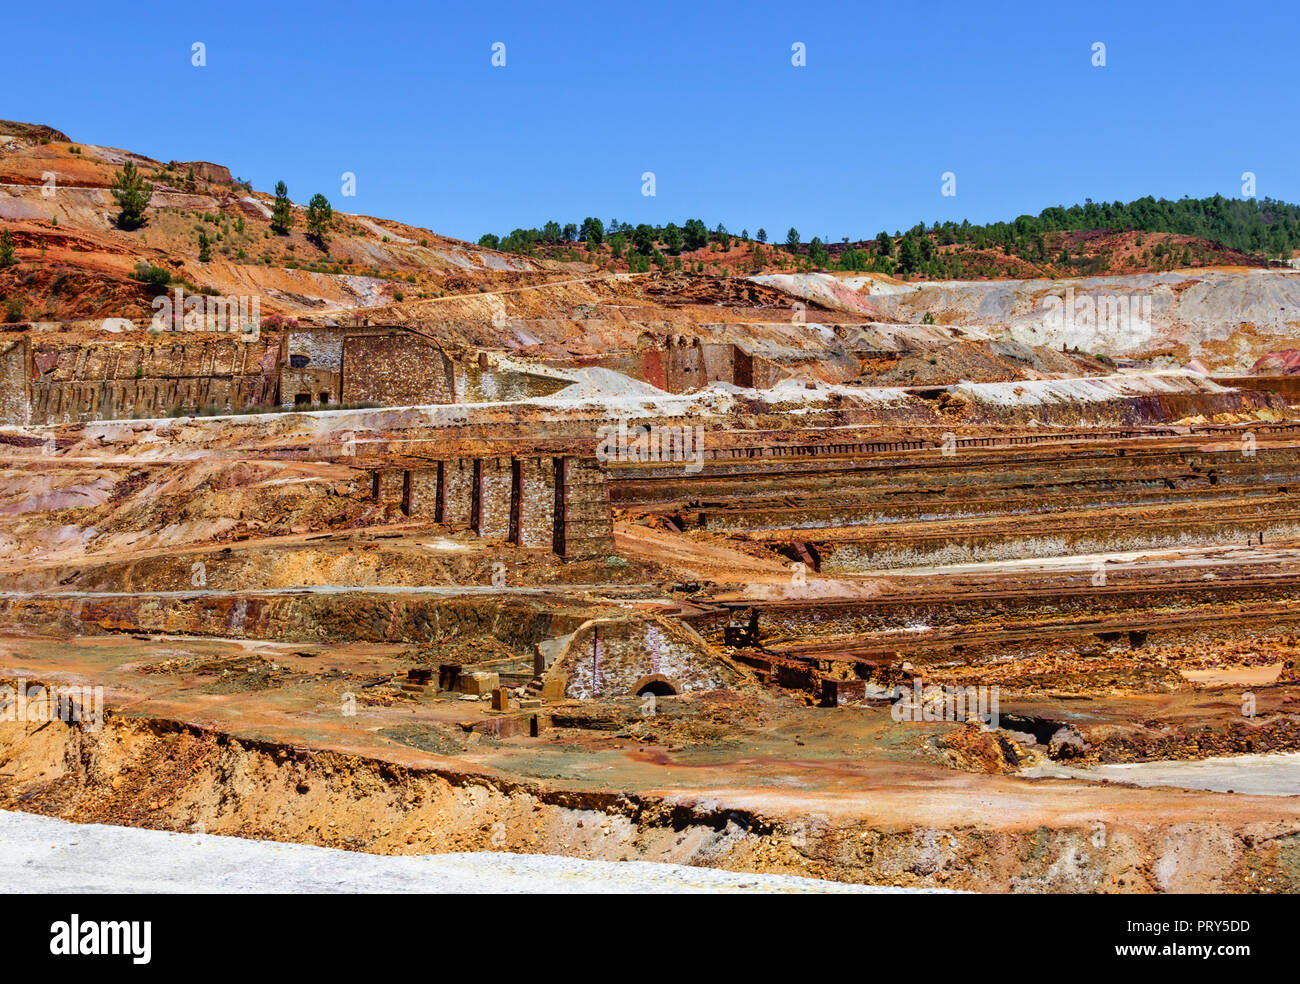 Old mining explotation landscape Stock Photo